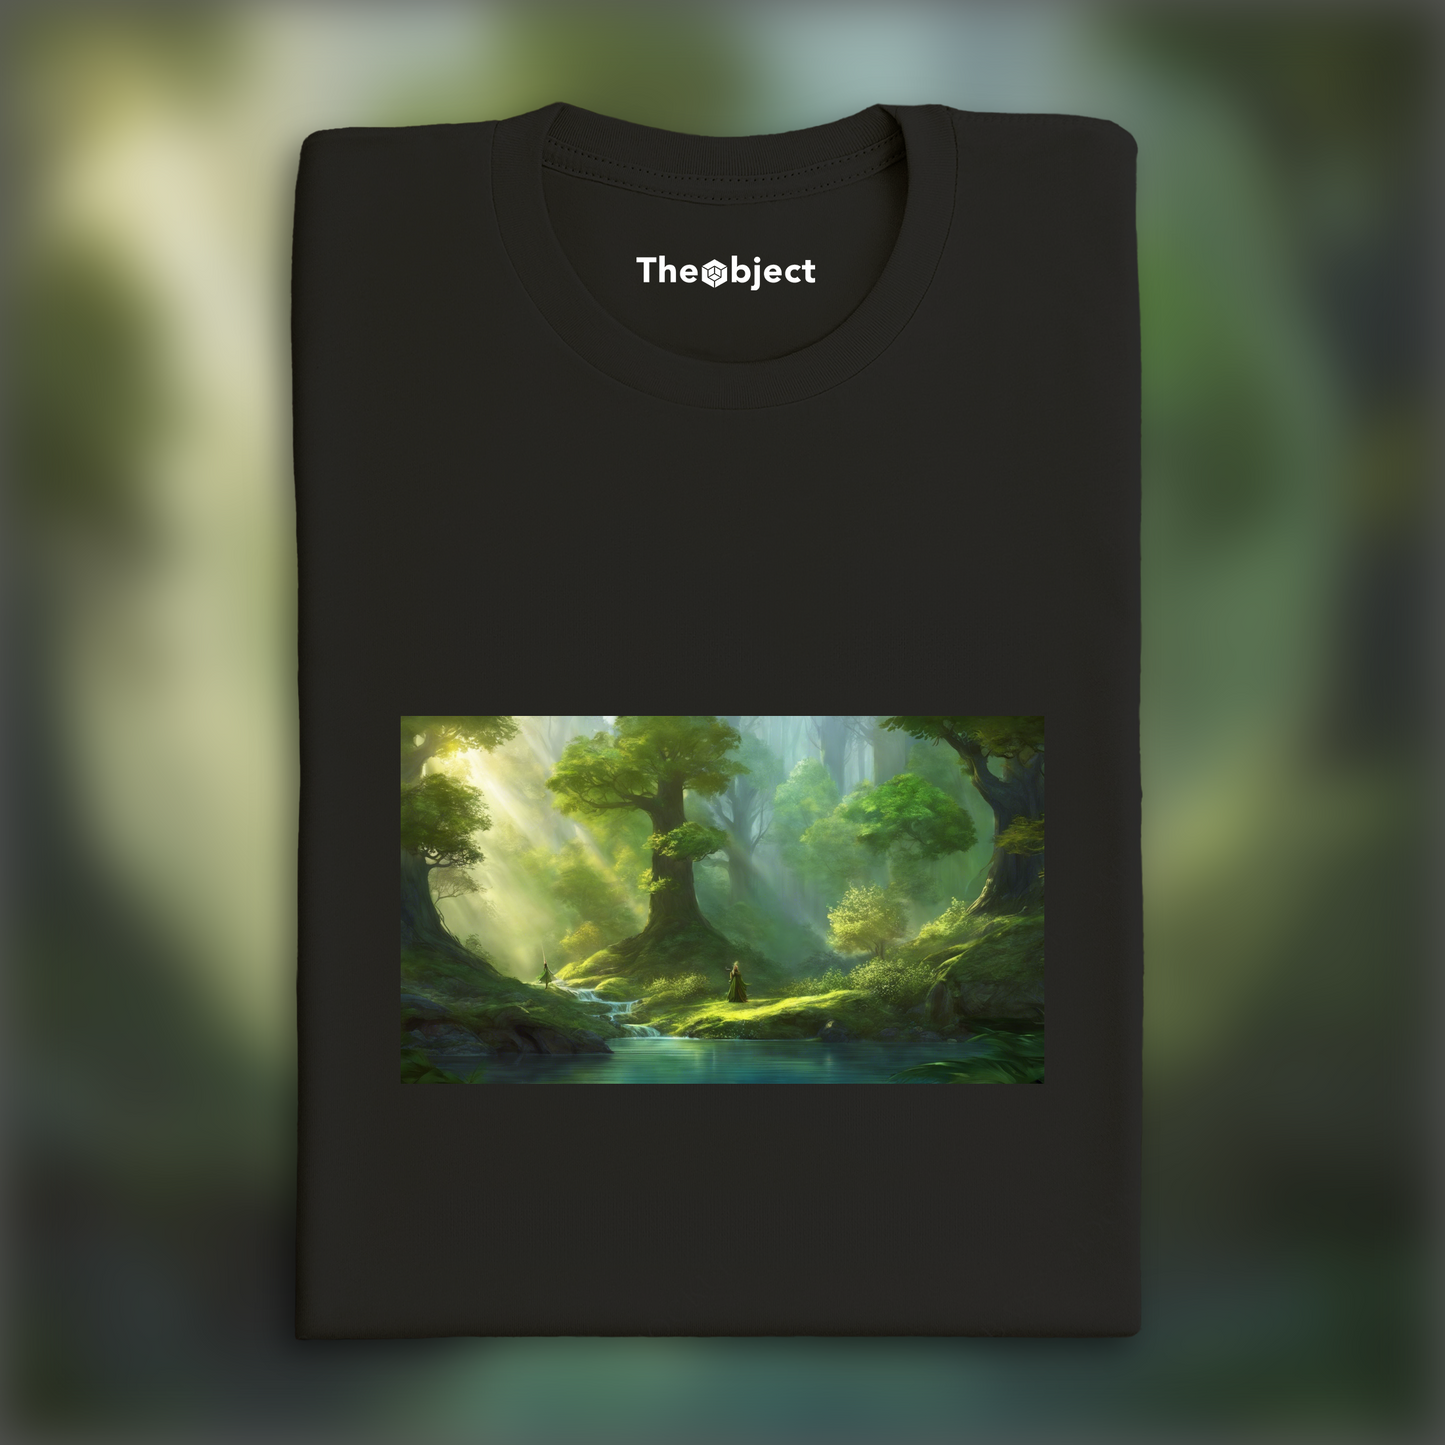 T-Shirt IA - Fantasy, Forêt Elfique Magique - 921434931